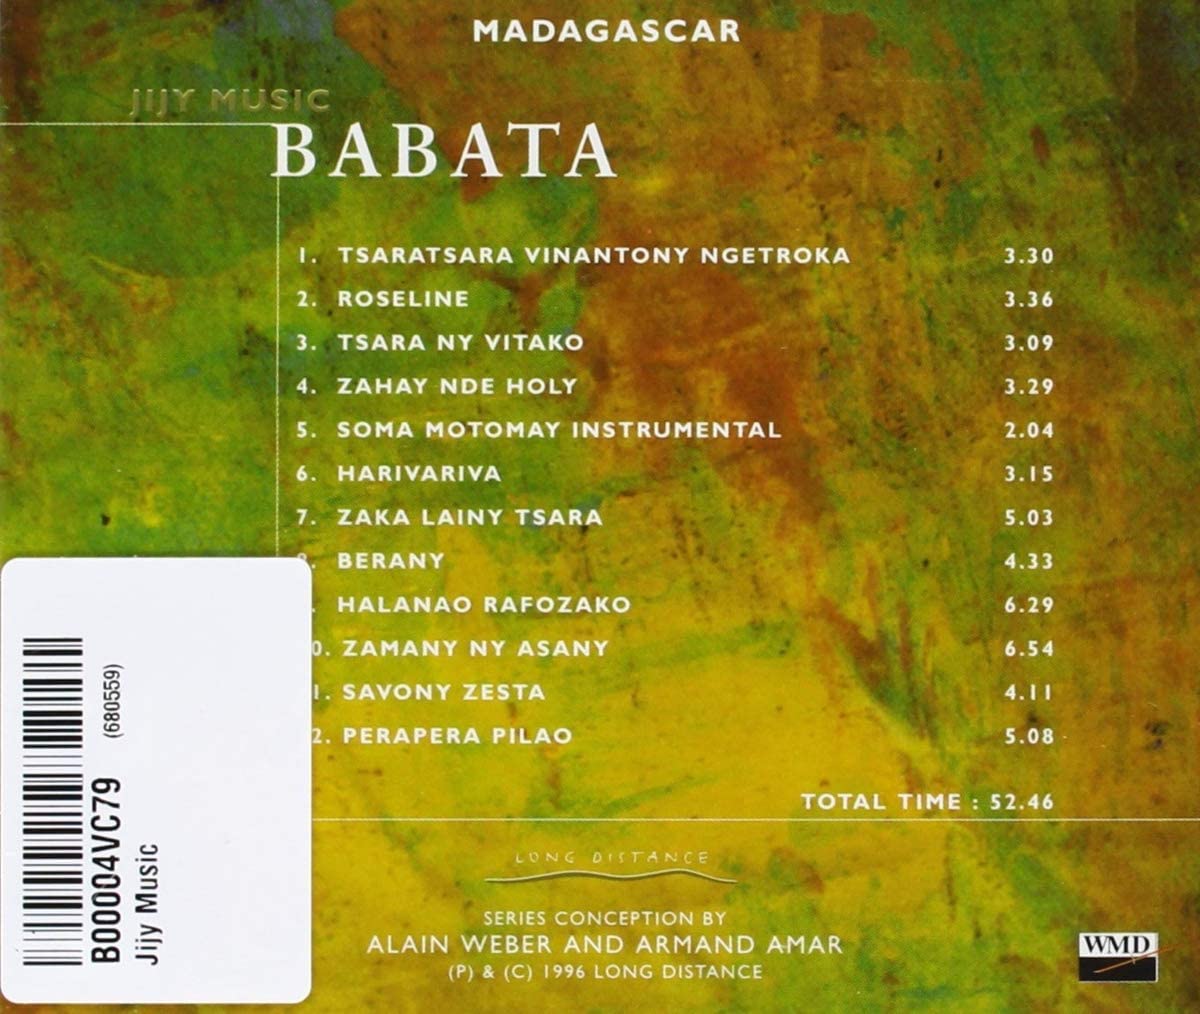 Babata: Jijy music (Madagascar) - slide-1